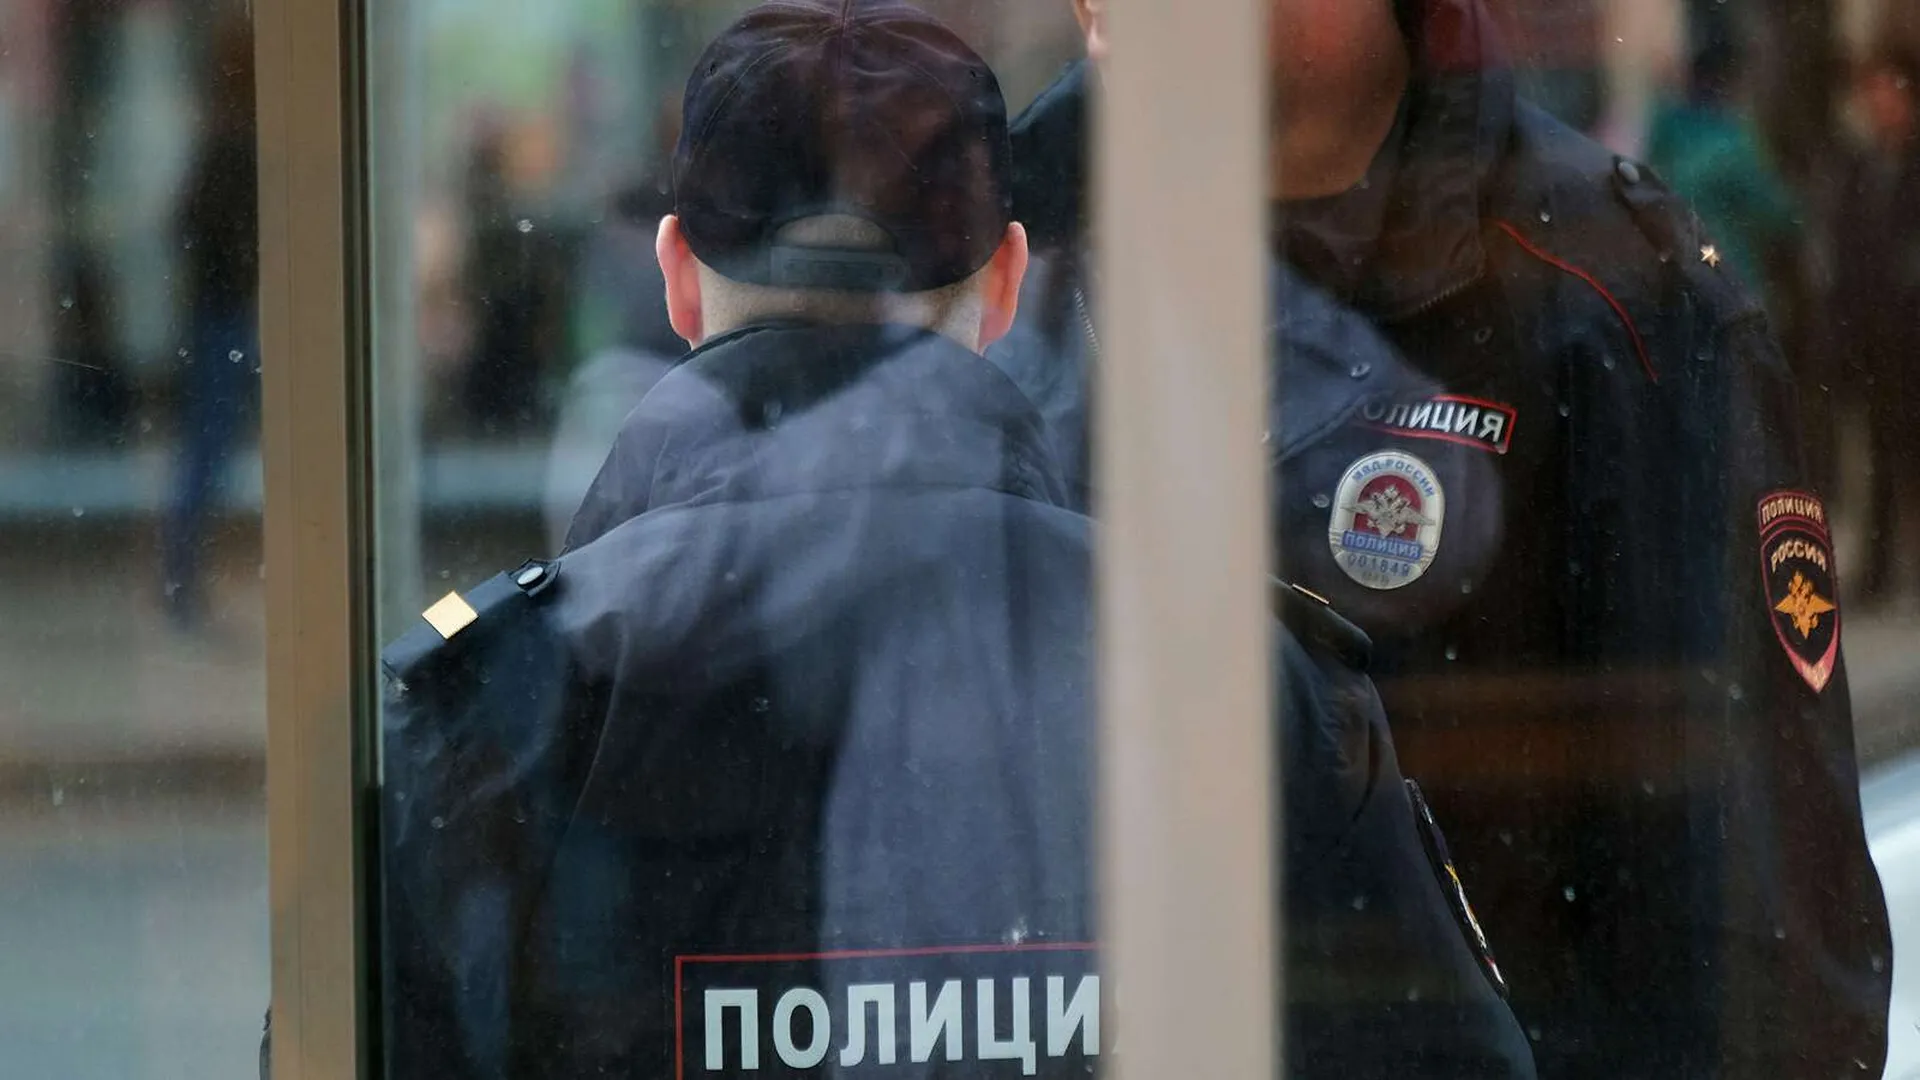 Менеджера Александра Емельяненко задержали по подозрению в изнасиловании — СМИ